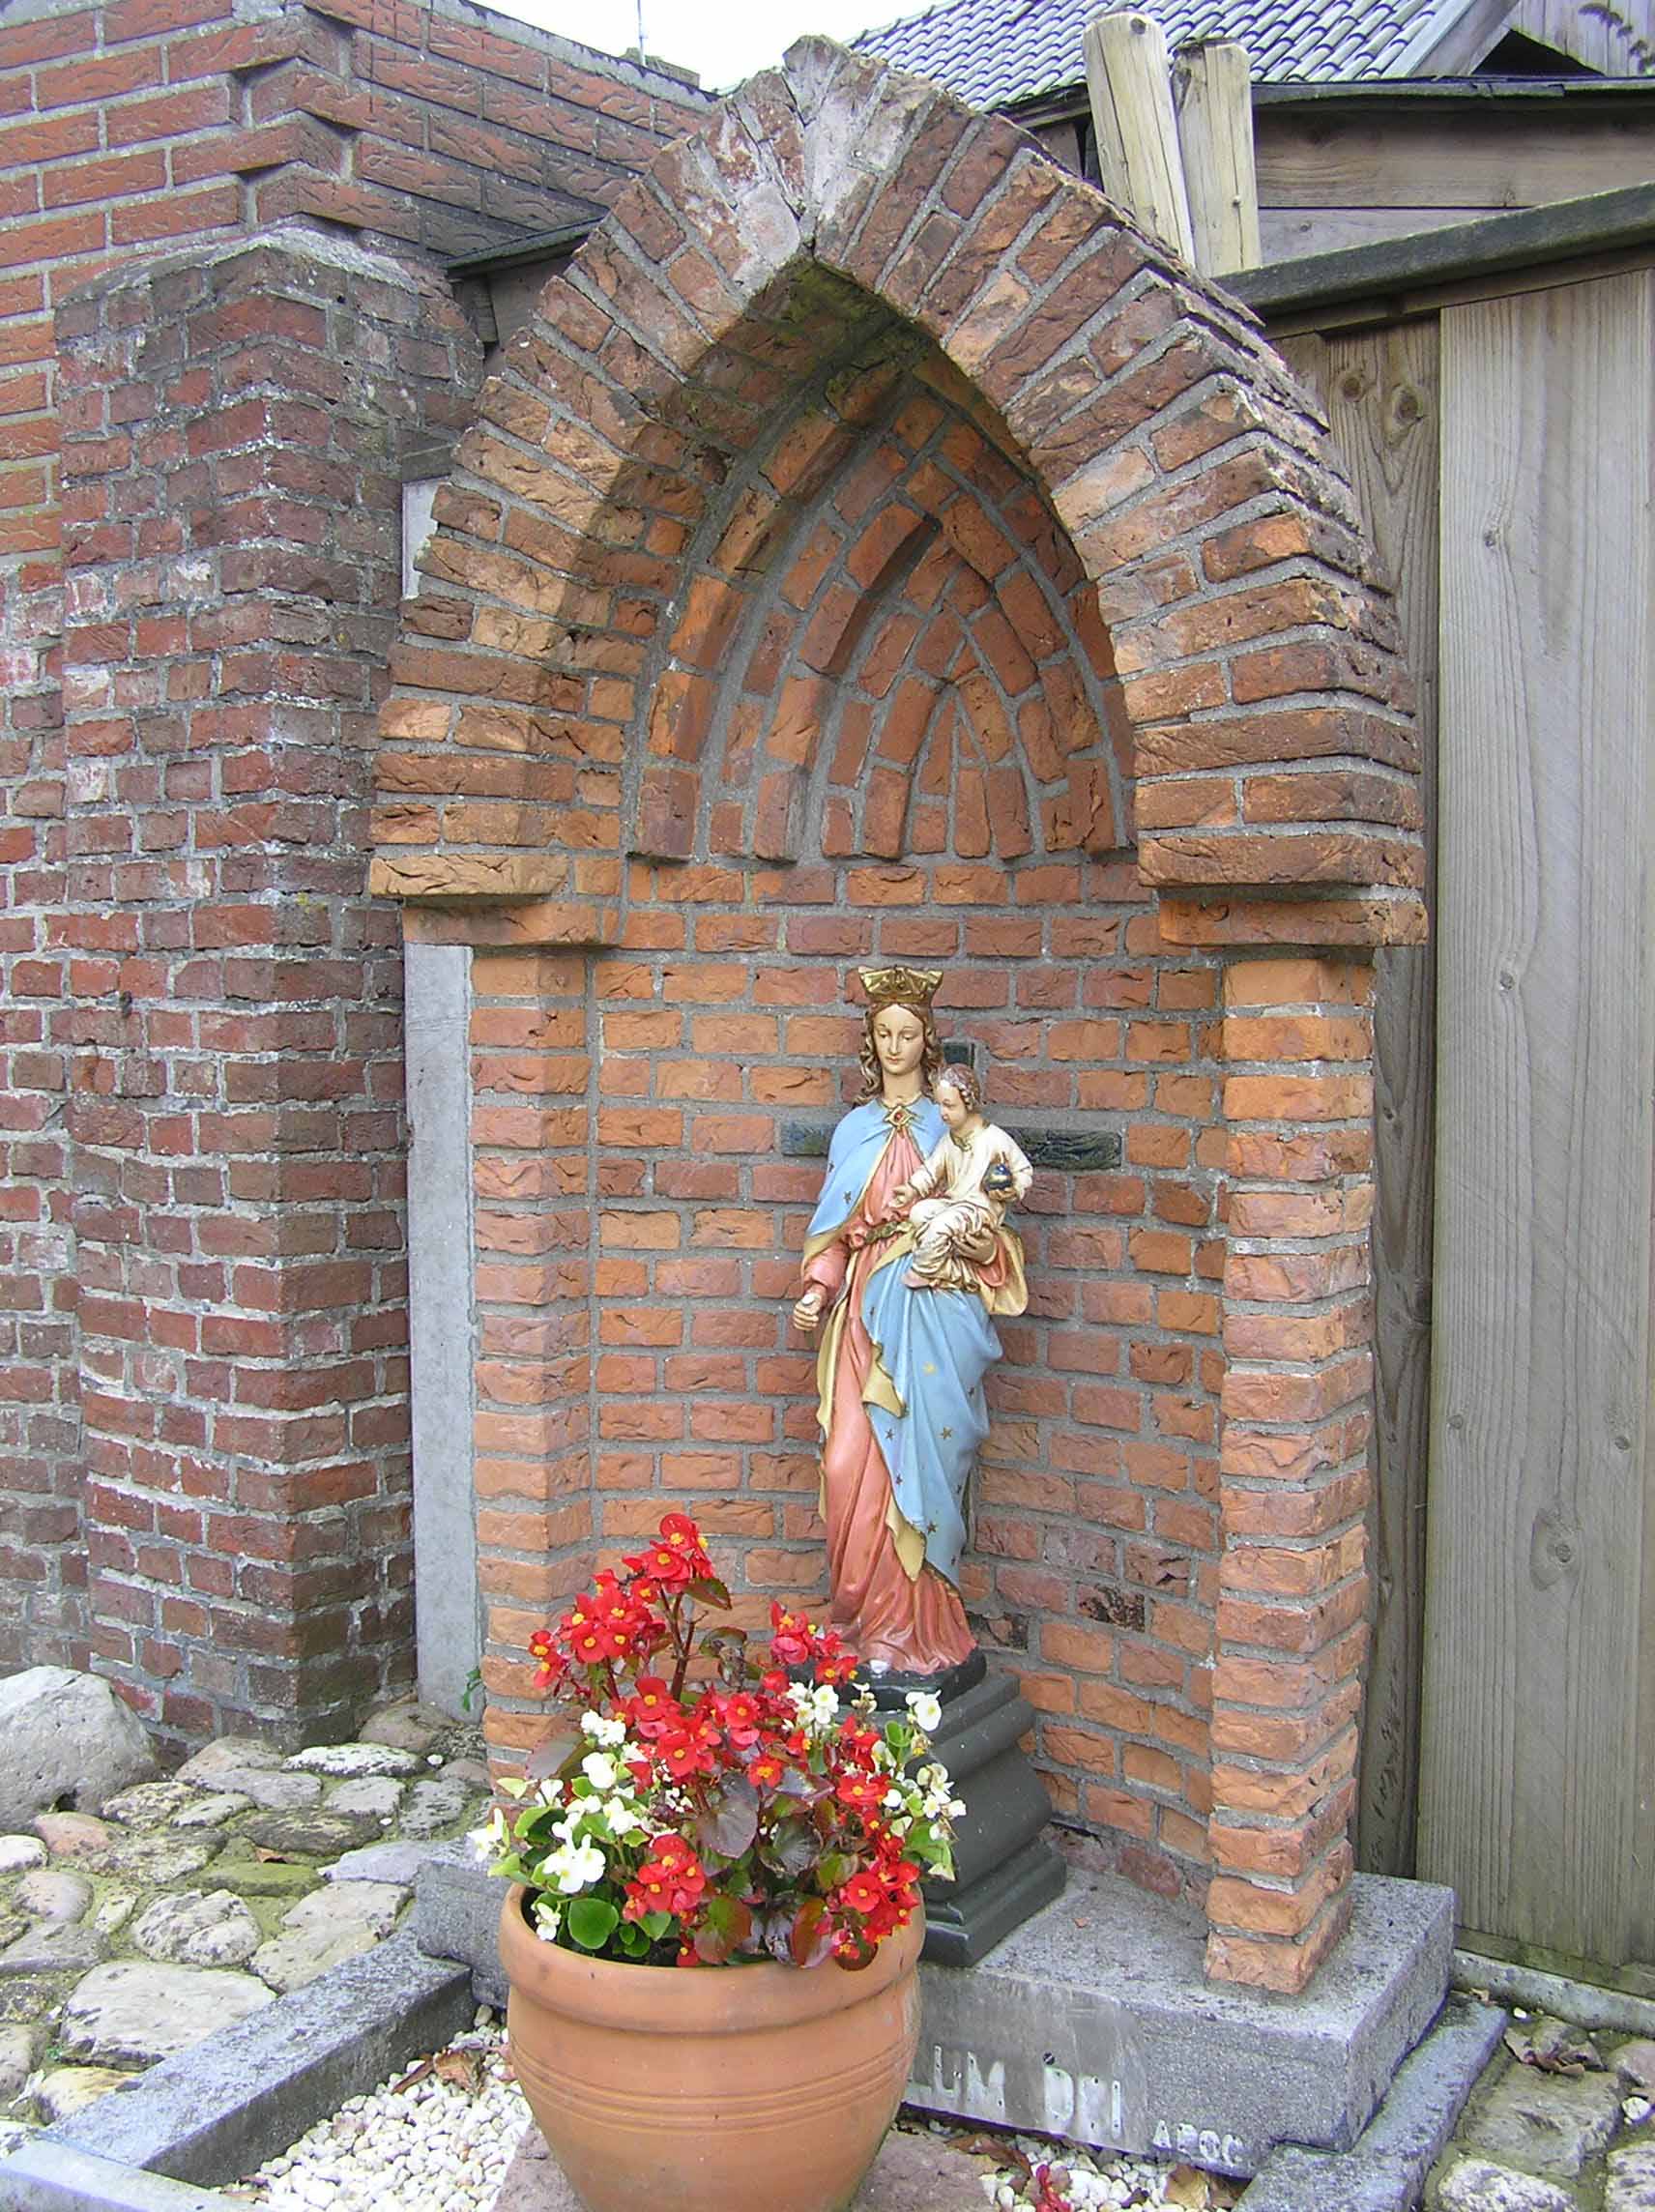 68. Mariabeeld of kerkhof aan de Oude Kerkweg in Zenderen